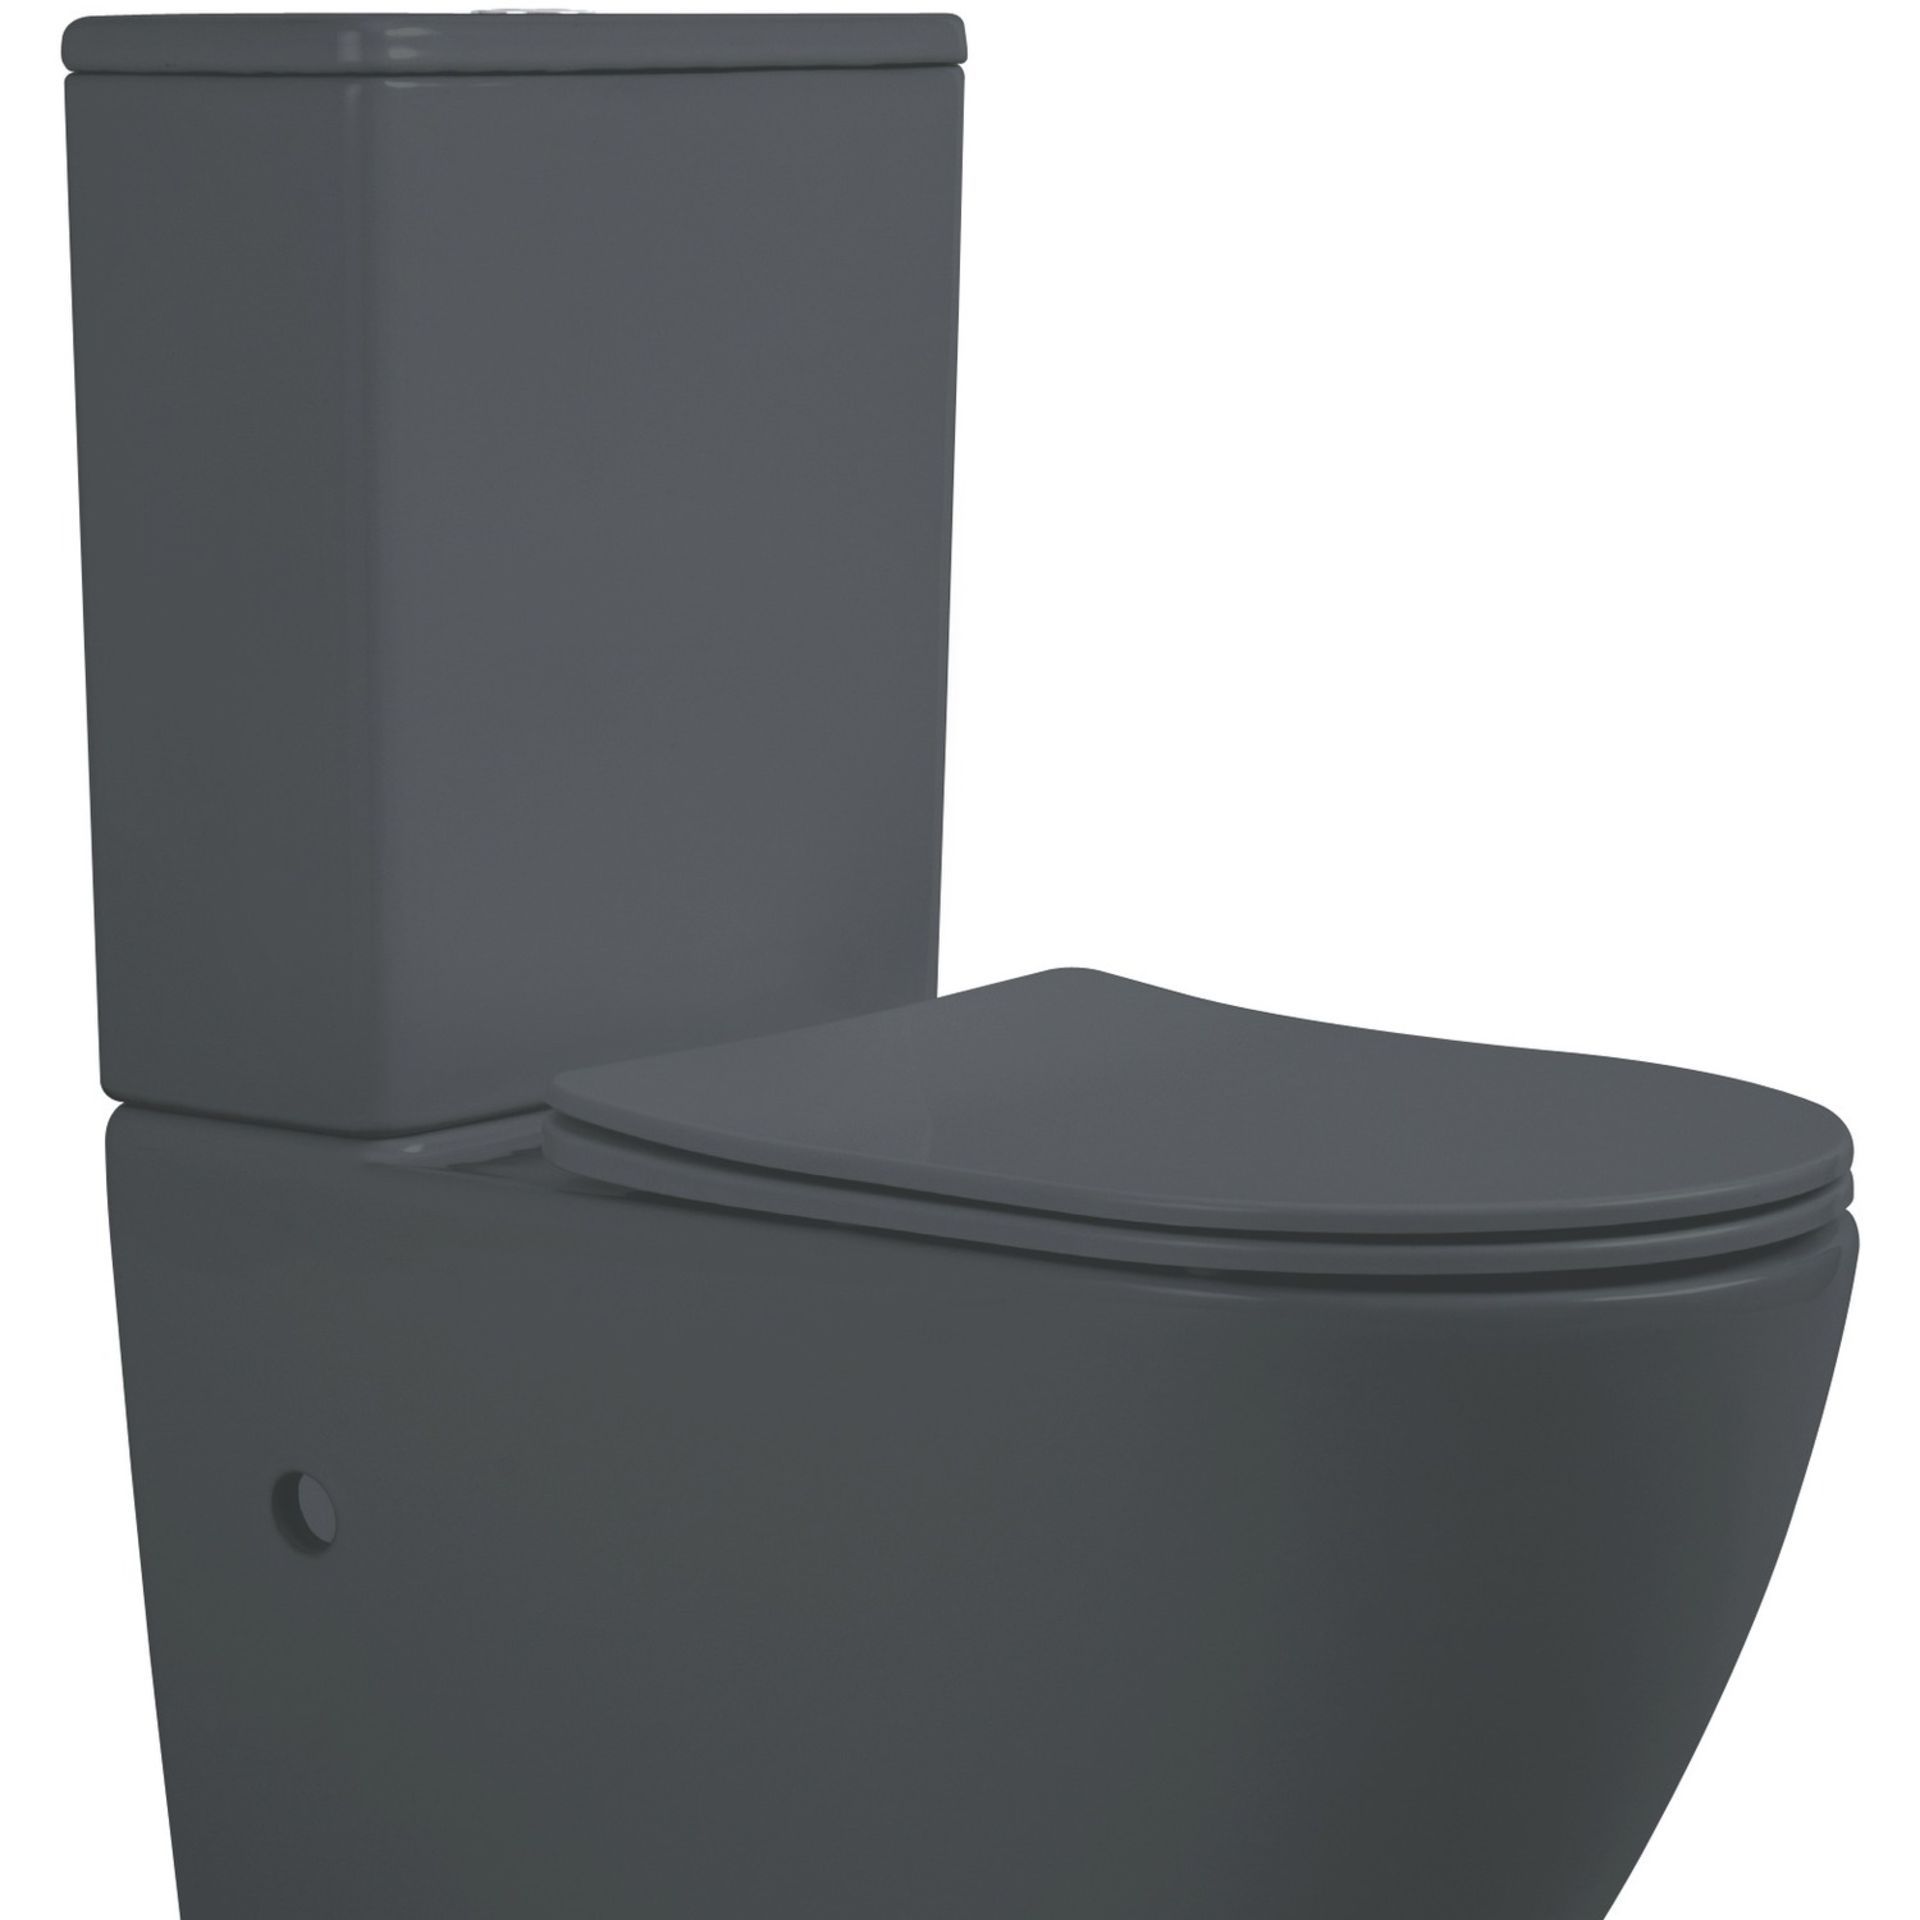 NEW & BOXED KARCENT Rimless Washdown Two Piece Toilet. MATT GREY. This Rimless 2-piece toilet has